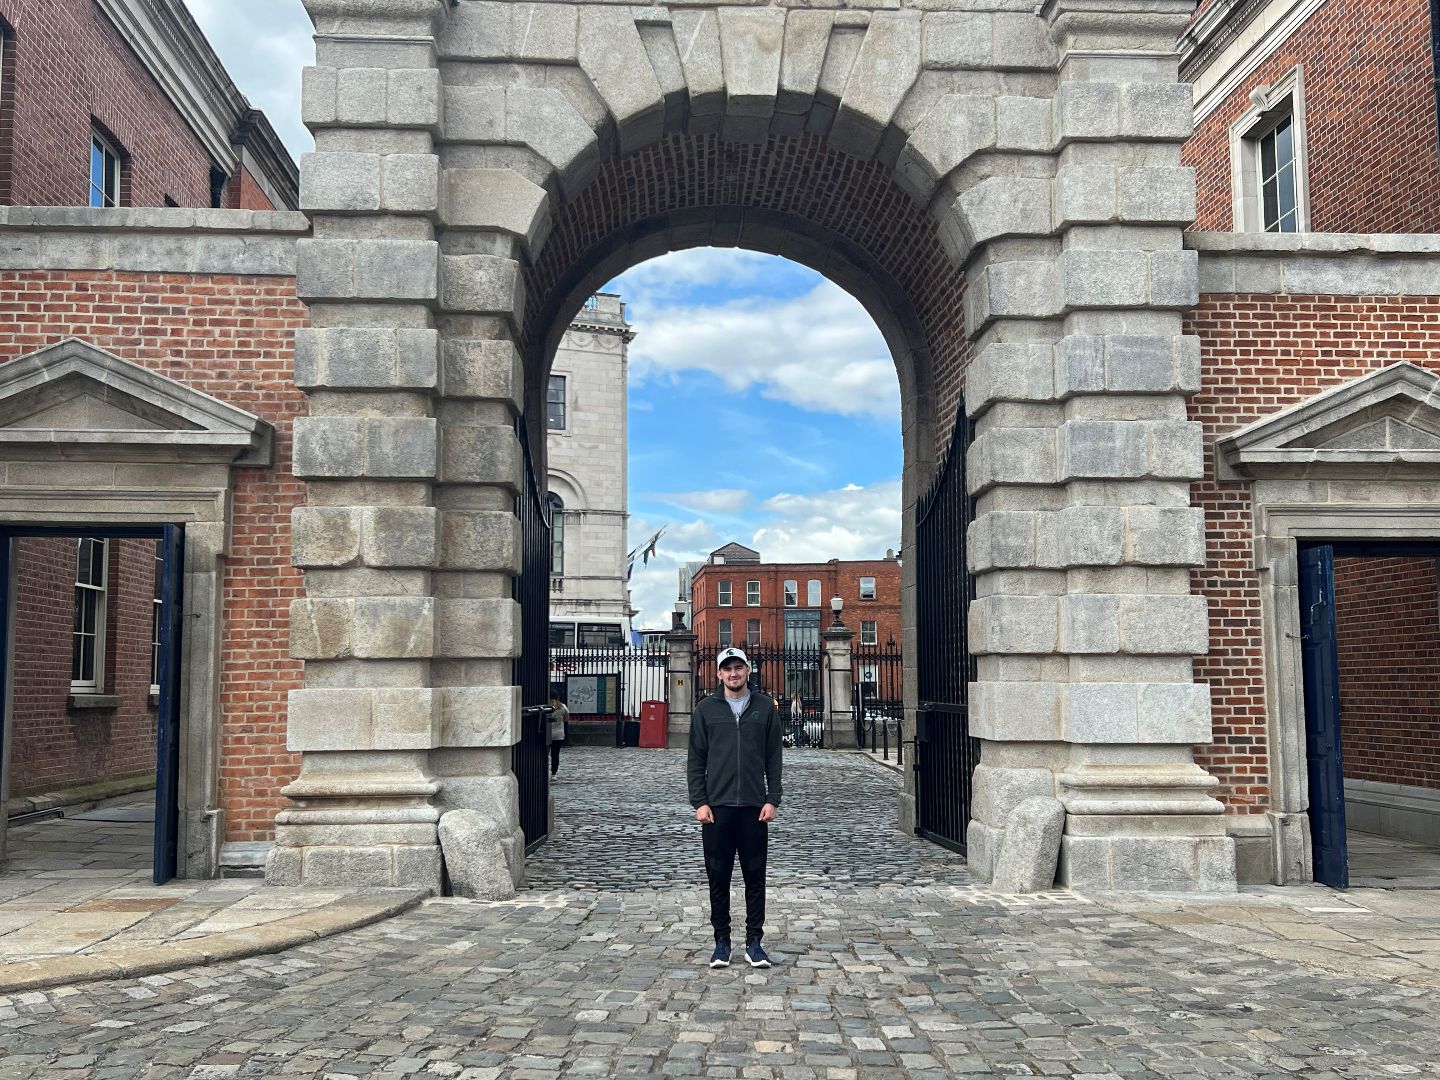 Andrew standing in front of Dublin Castle in Ireland